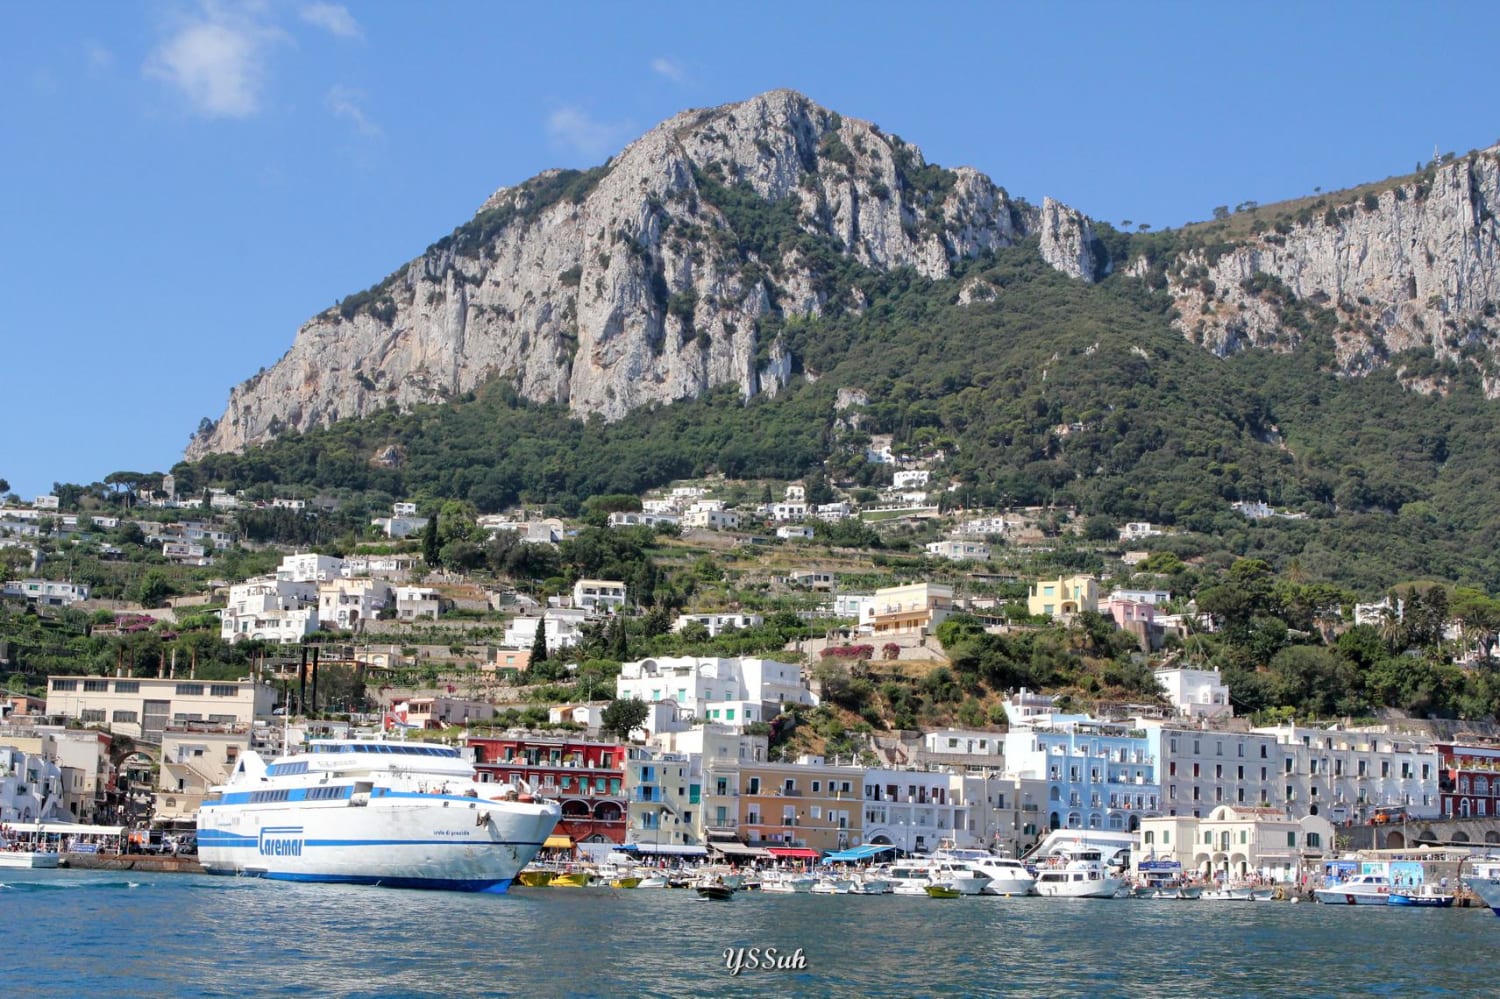 Capri island, Italy.